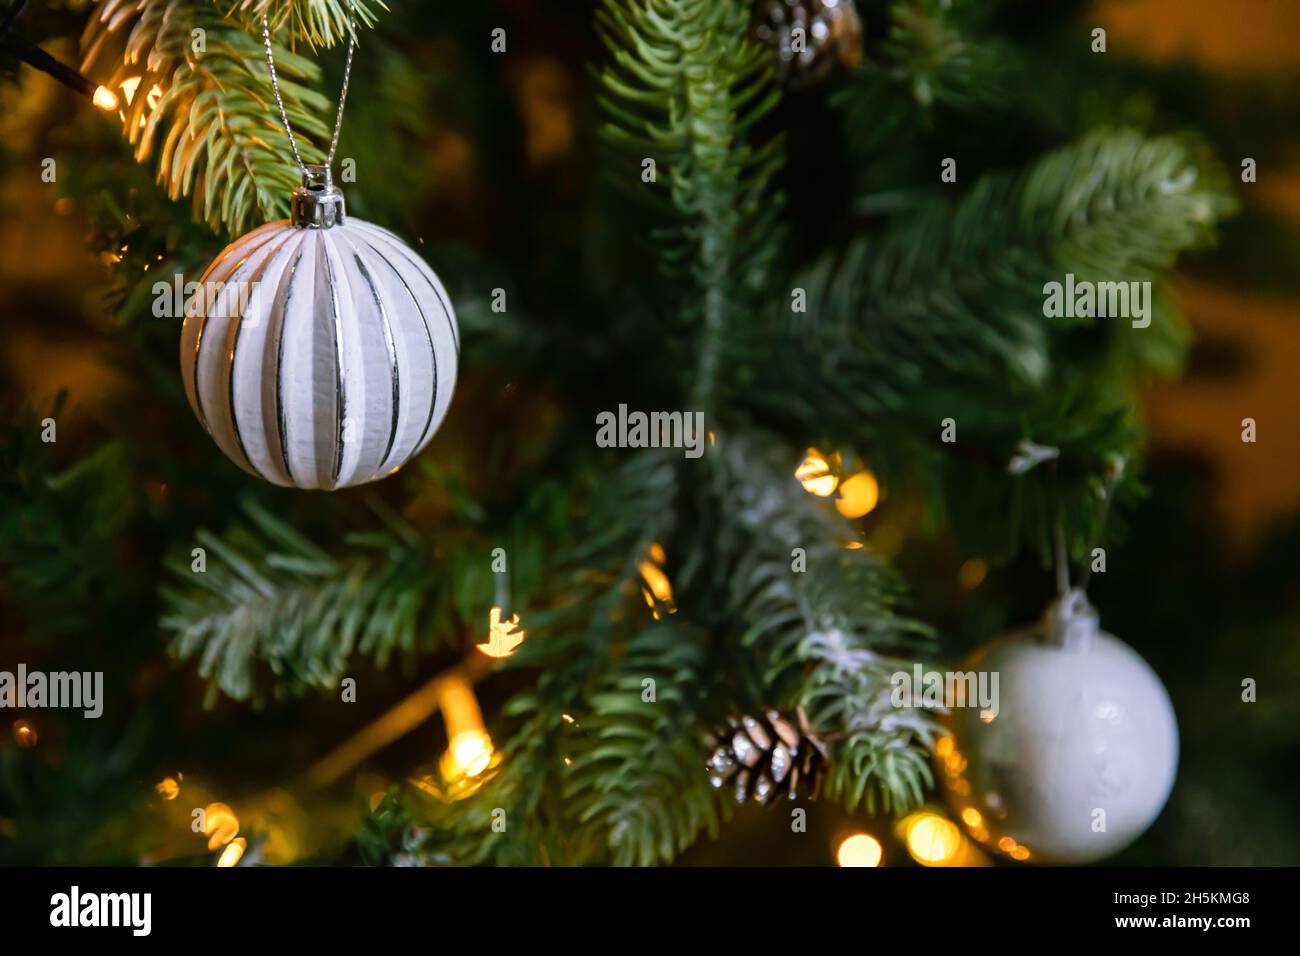 Klassischer Weihnachtsbaum mit Weihnachtsschmuck. Weihnachtsbaum mit wite und silbernen Dekorationen, Ornamente Spielzeug und Ball. Moderne Einrichtung im klassischen Stil Stockfoto